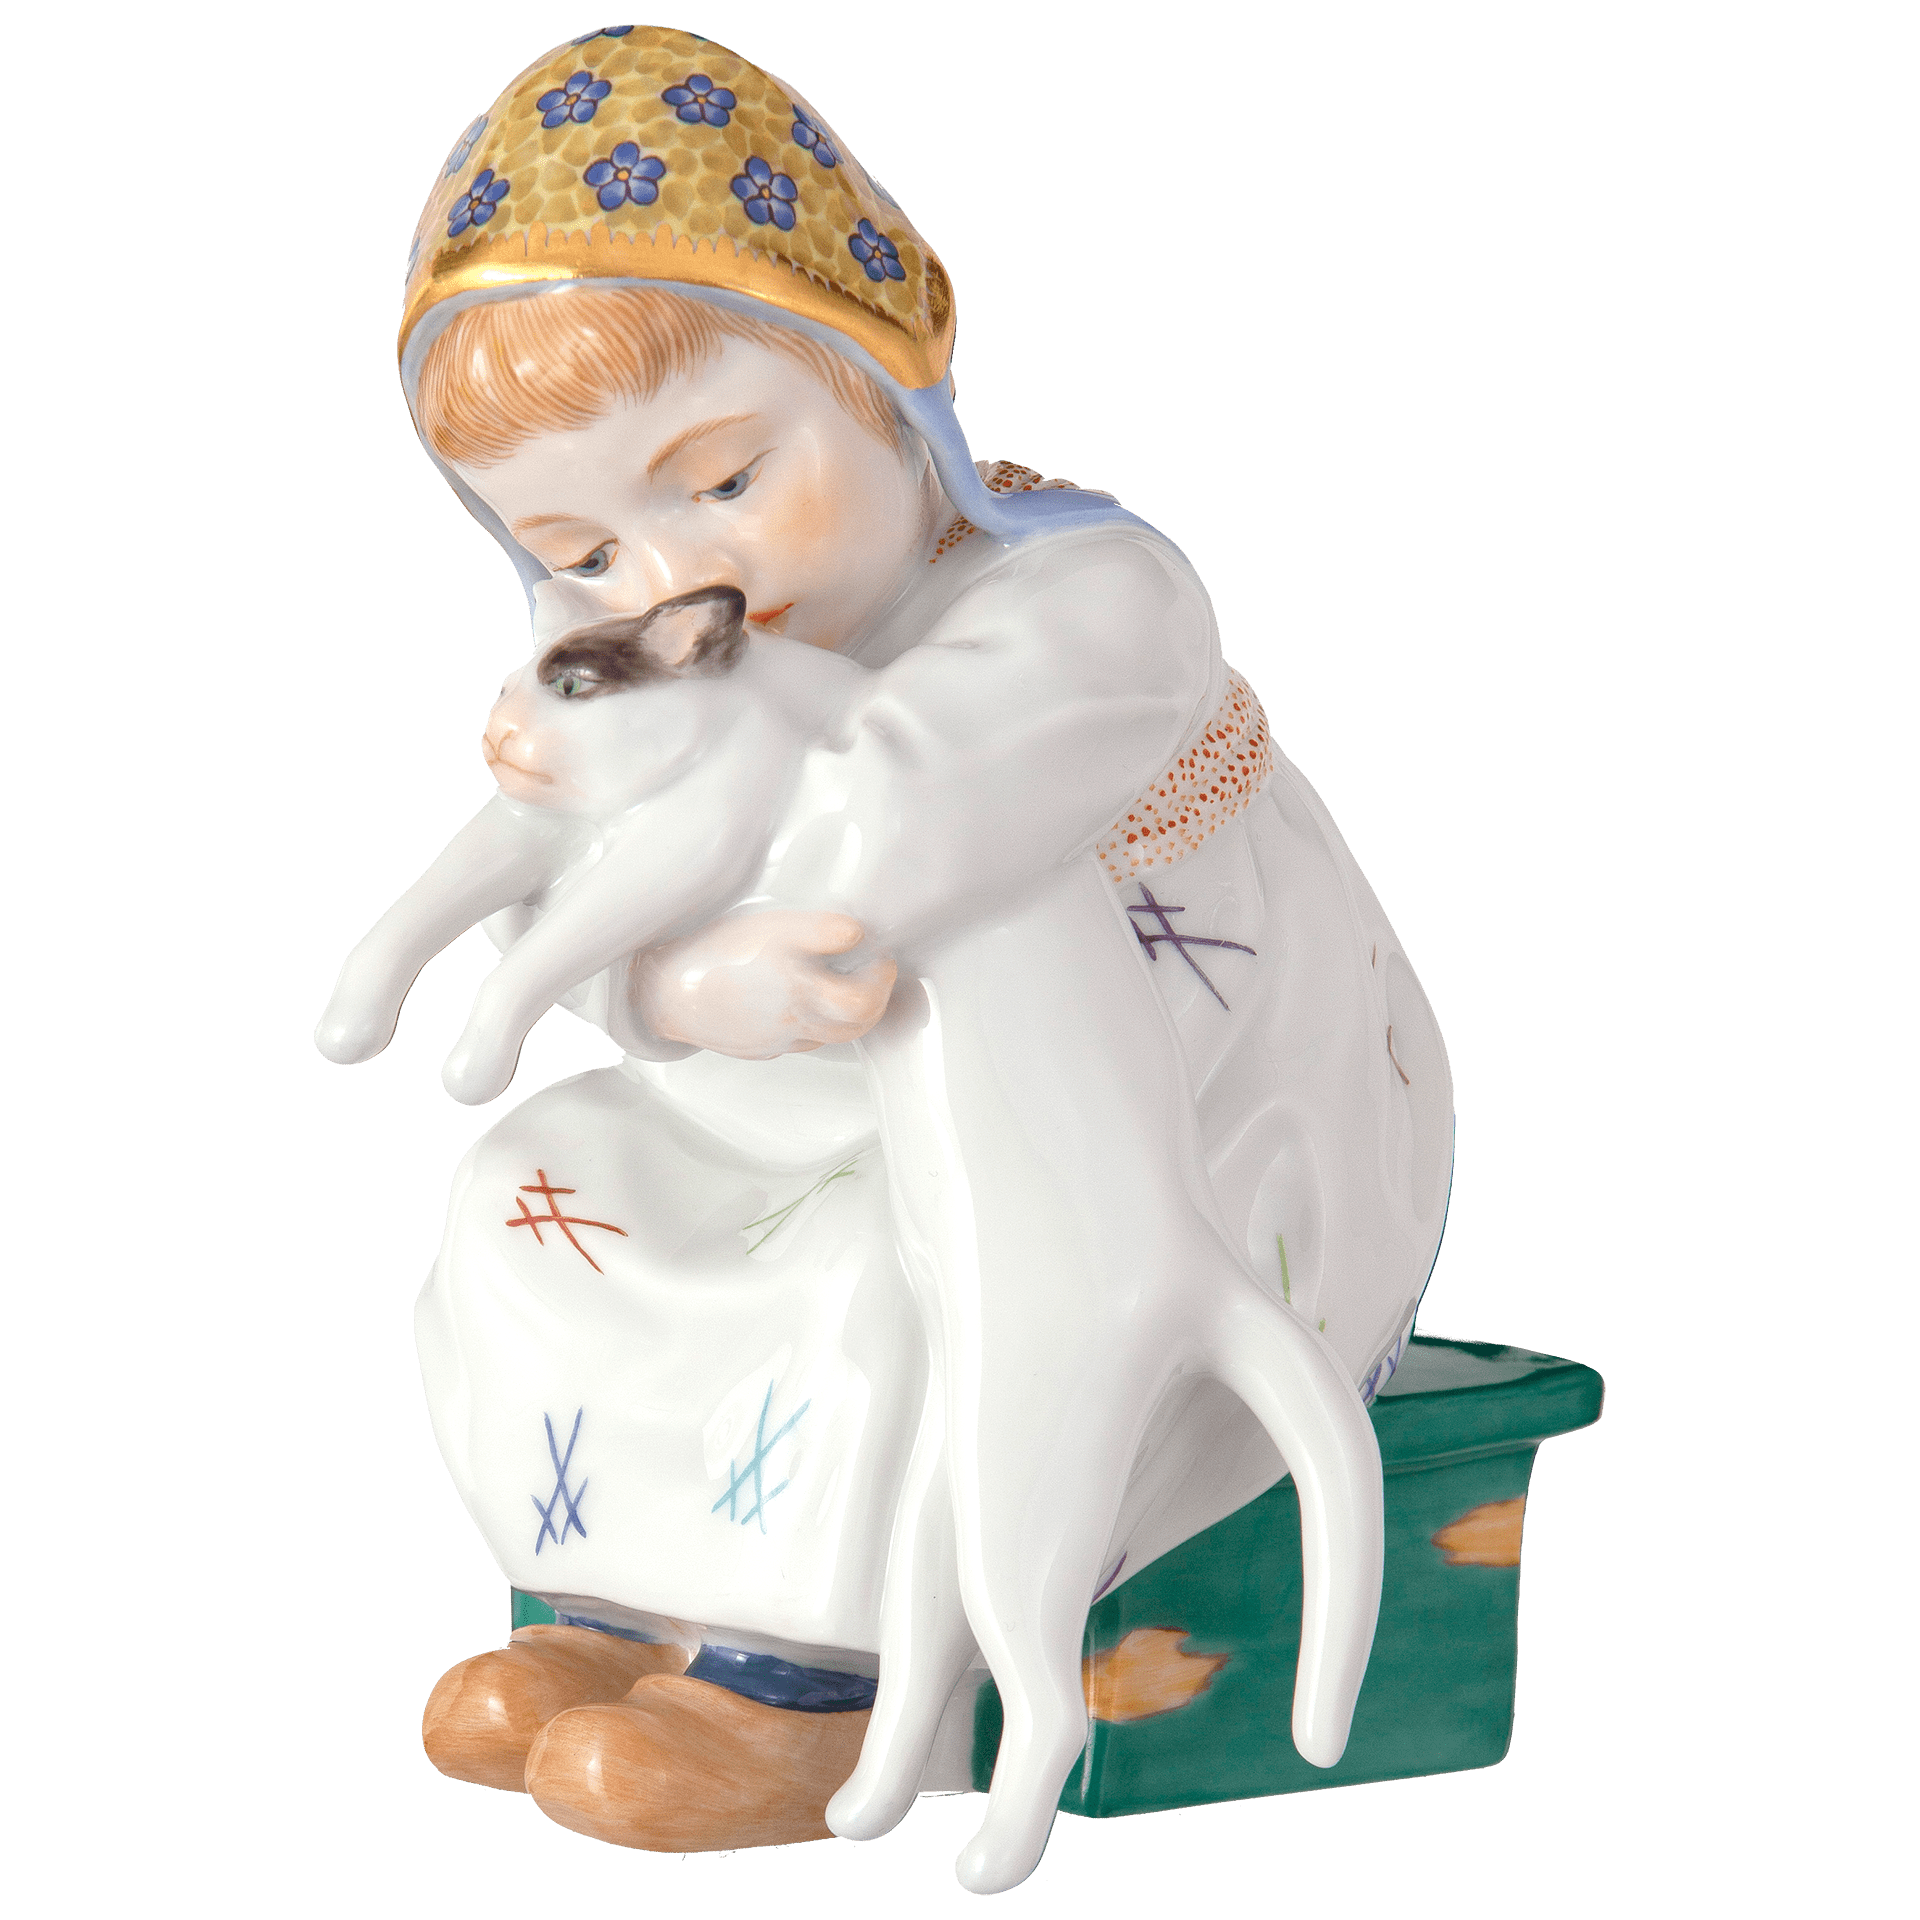 ドイツの名窯マイセン 日本公式サイト|人形「ネコを抱く女の子」